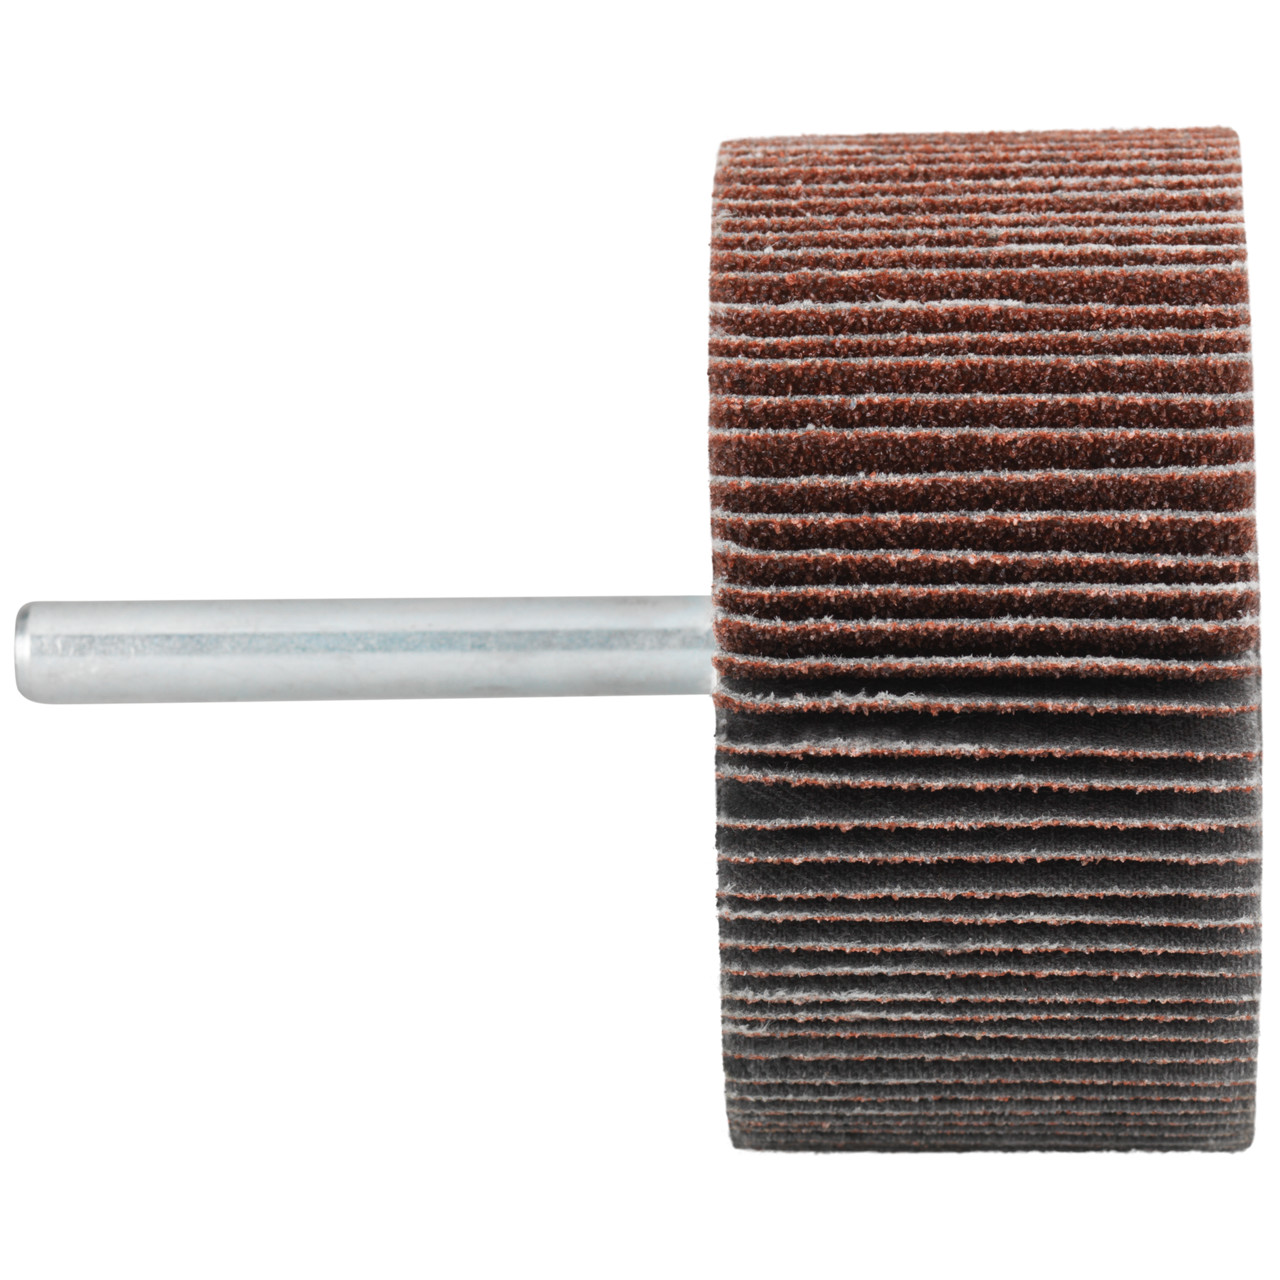 Tyrolit A-P01 C X Pennen DxD 30x15 Voor staal, roestvast staal en non-ferrometalen, P120, vorm: 52LA, Art. 816905